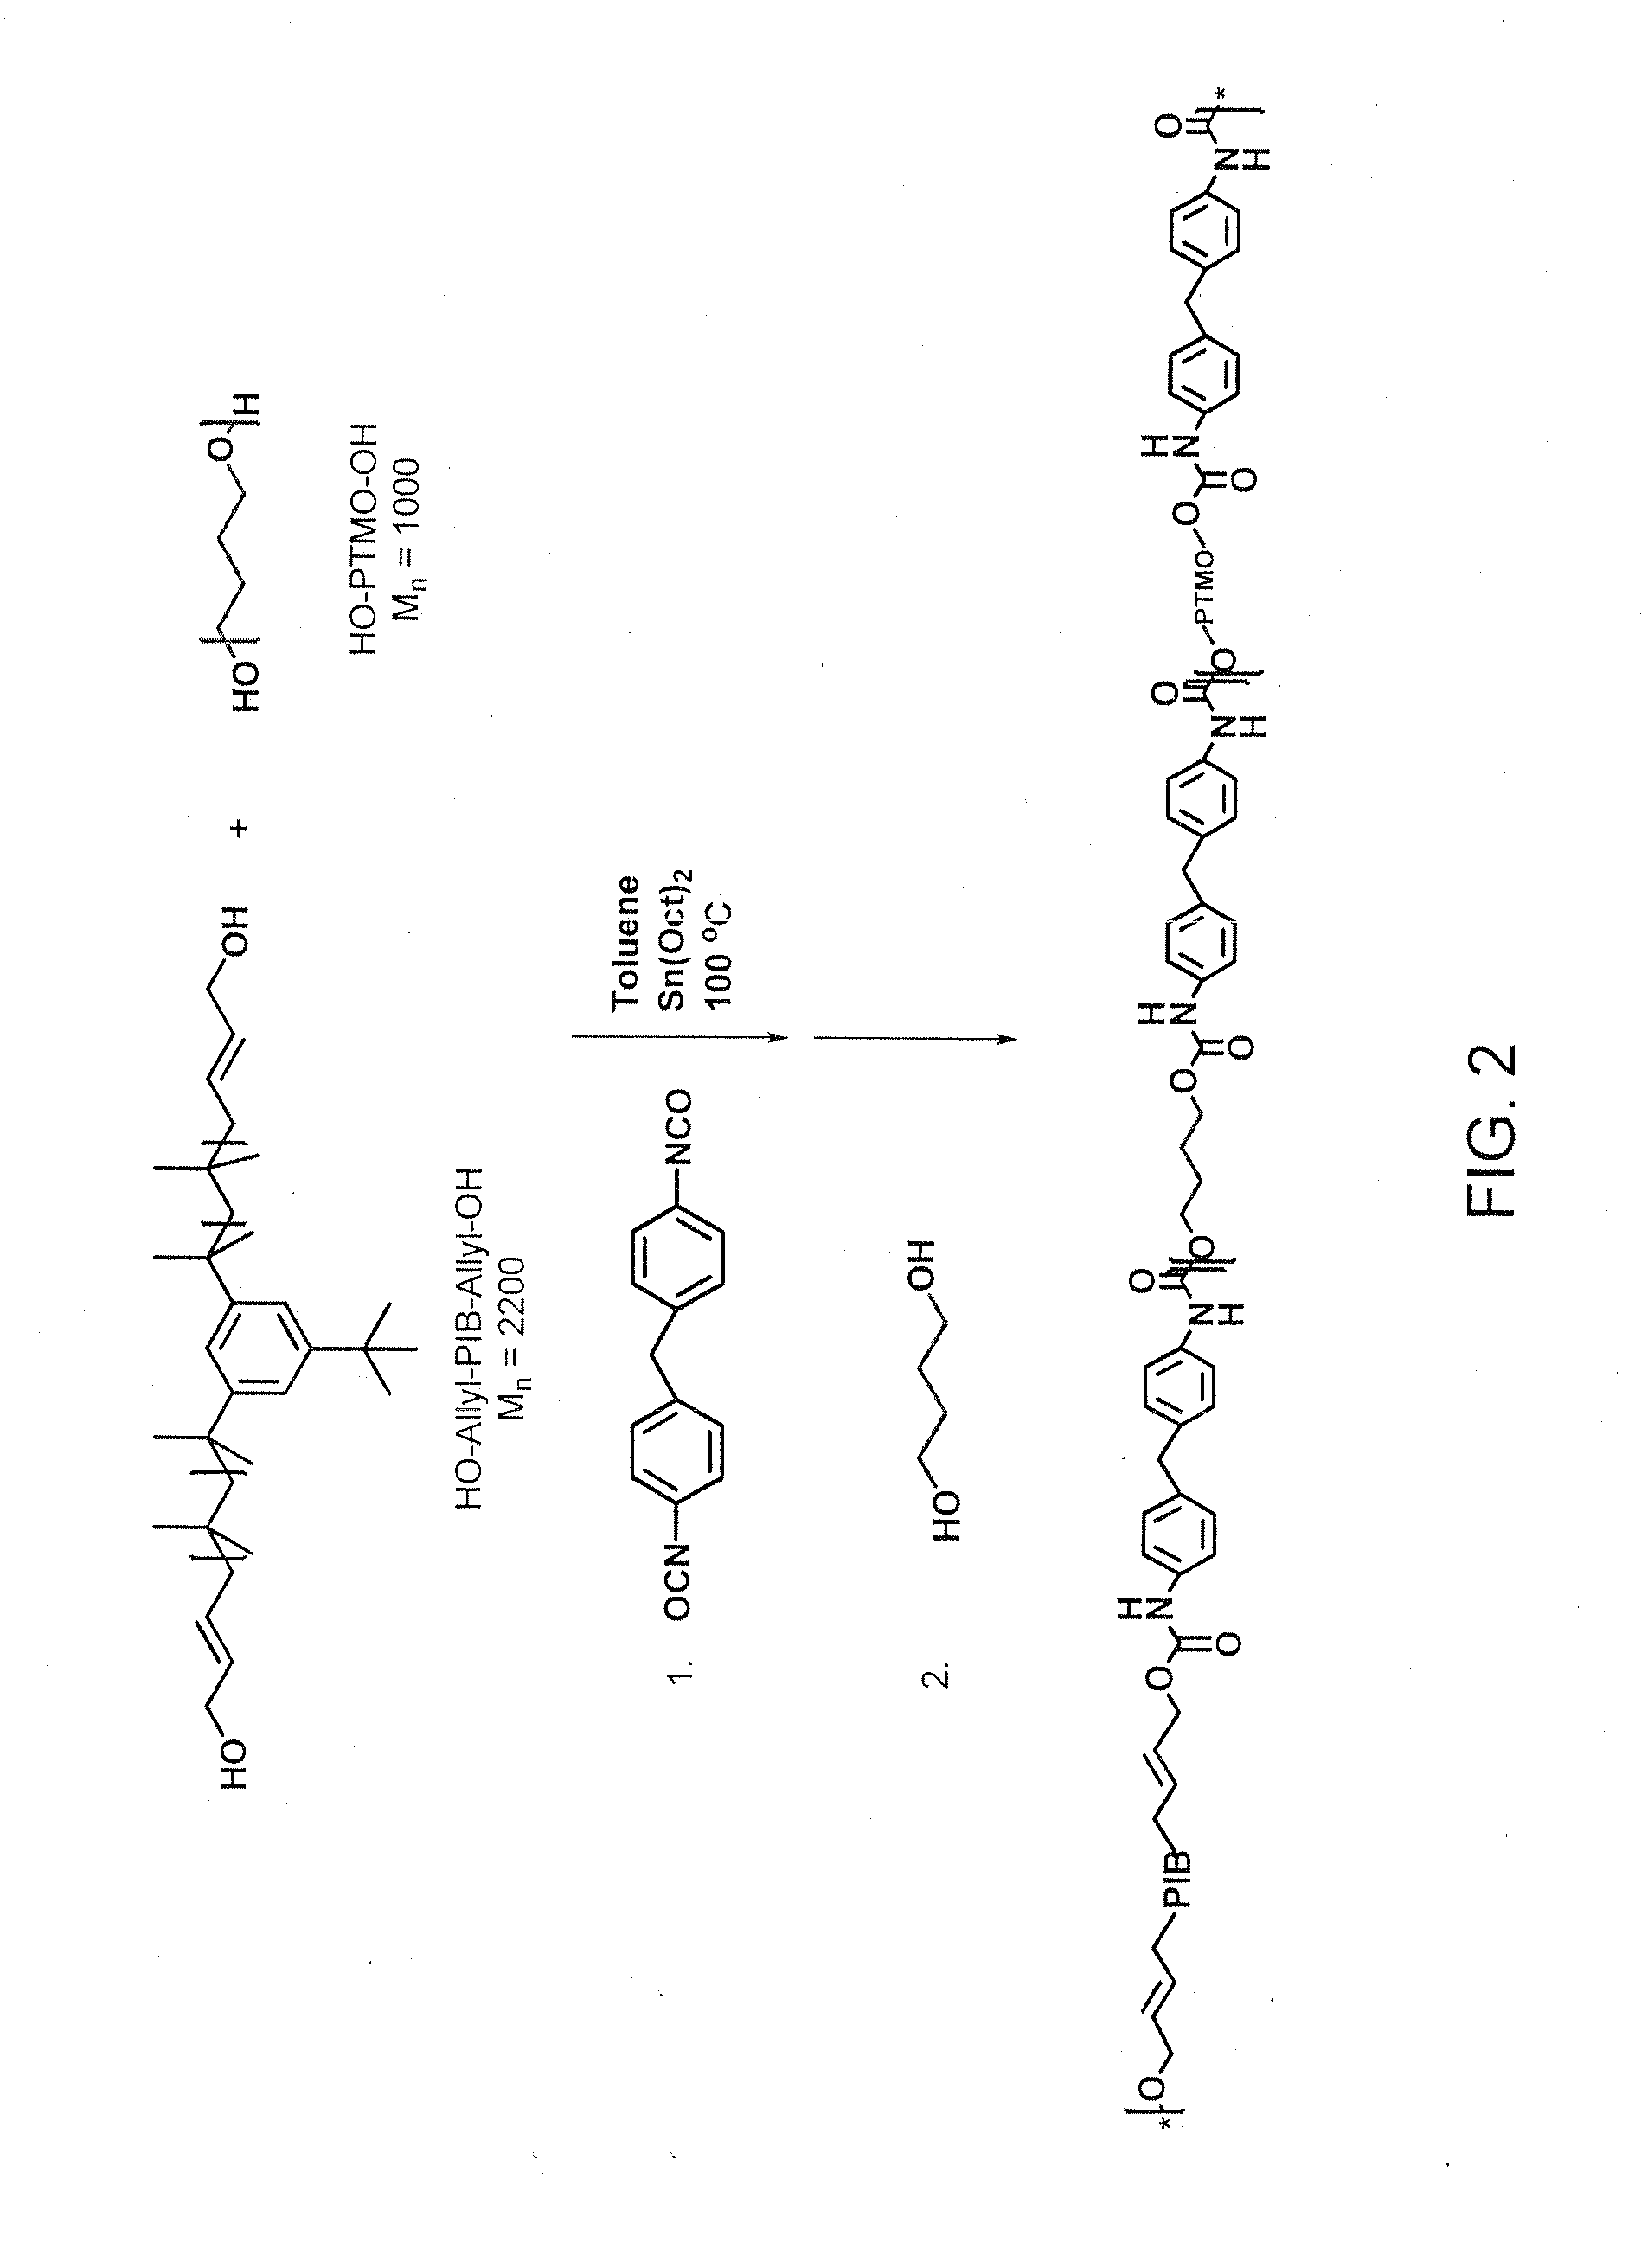 Polyisobutylene-Based Polyurethanes